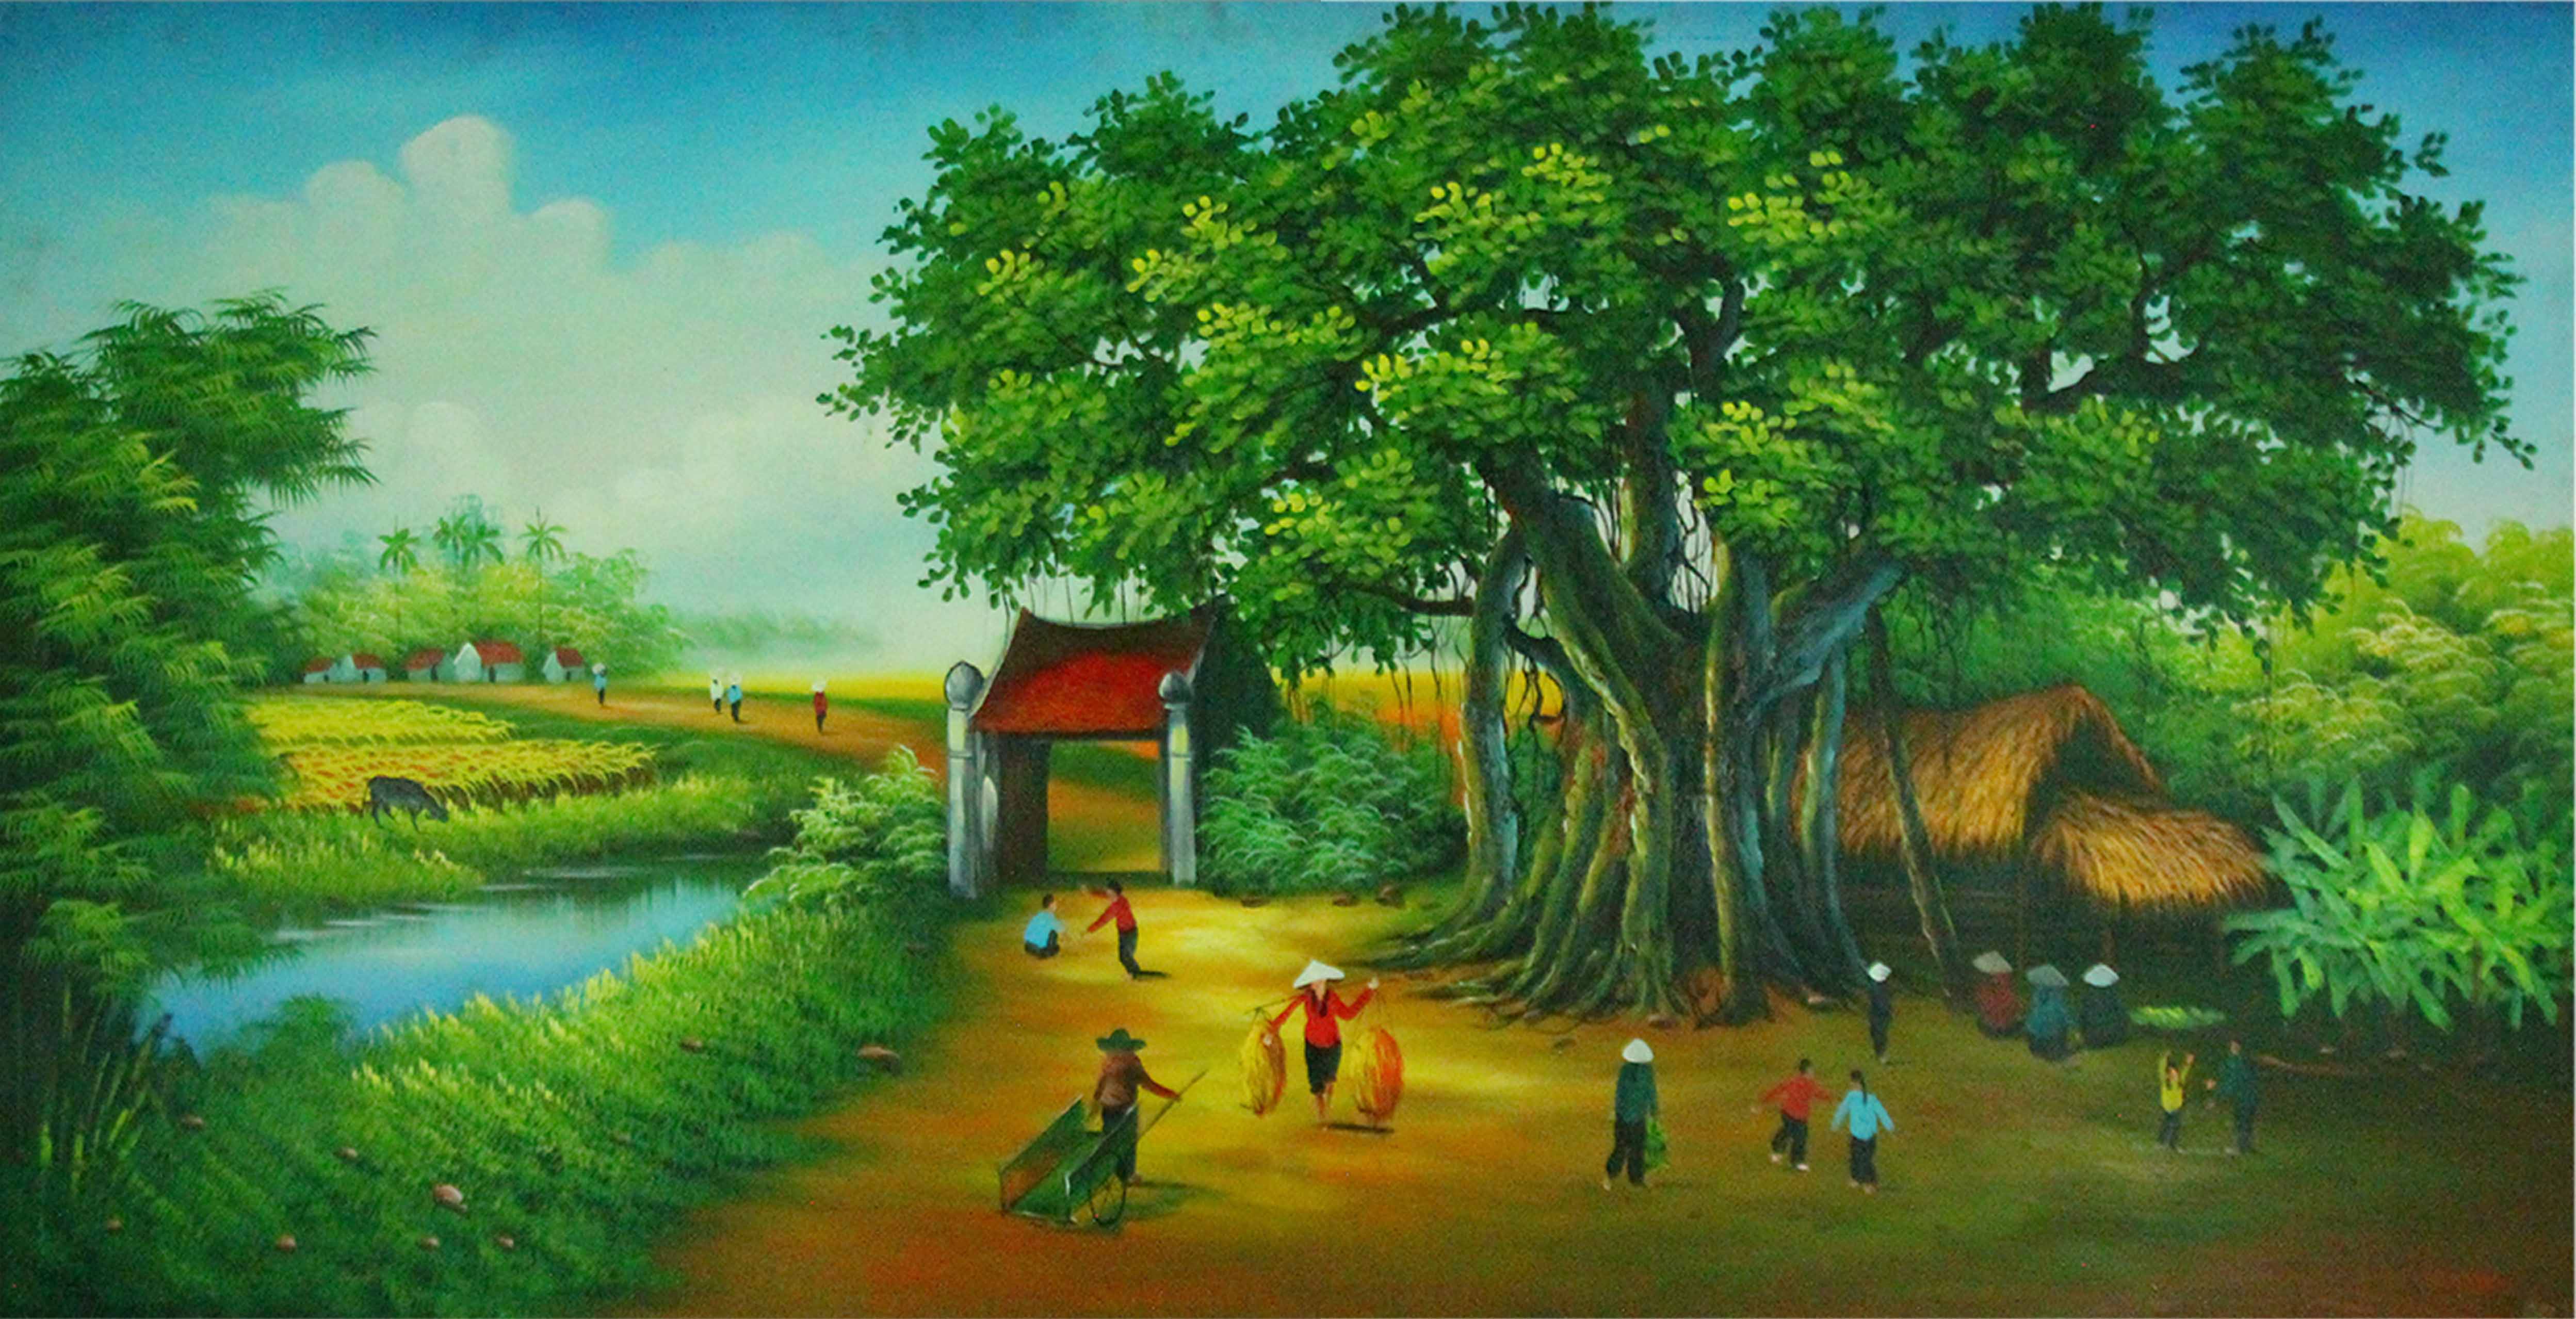 Tranh sơn dầu phong cảnh cánh đồng quê - TSD58LHAR - LEHAIS Art - Tranh sơn  dầu, tranh sơn acrylic, tranh sơn mài, tranh tường, tranh thư pháp, tranh  khắc gỗ, ranh